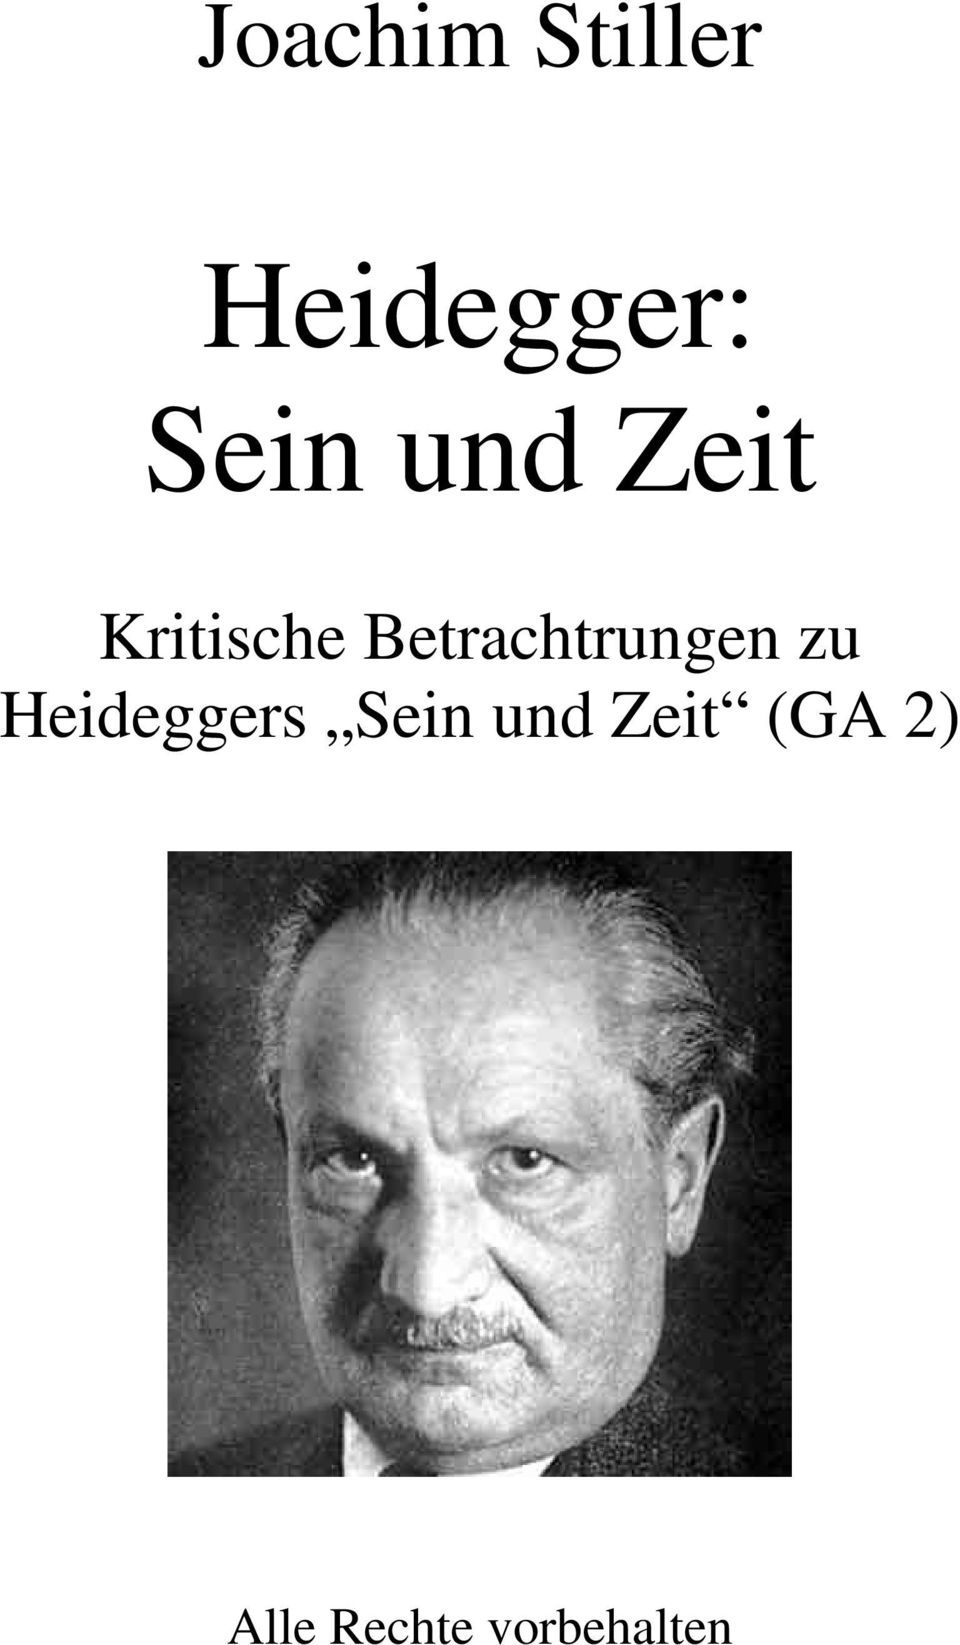 Betrachtrungen zu Heideggers